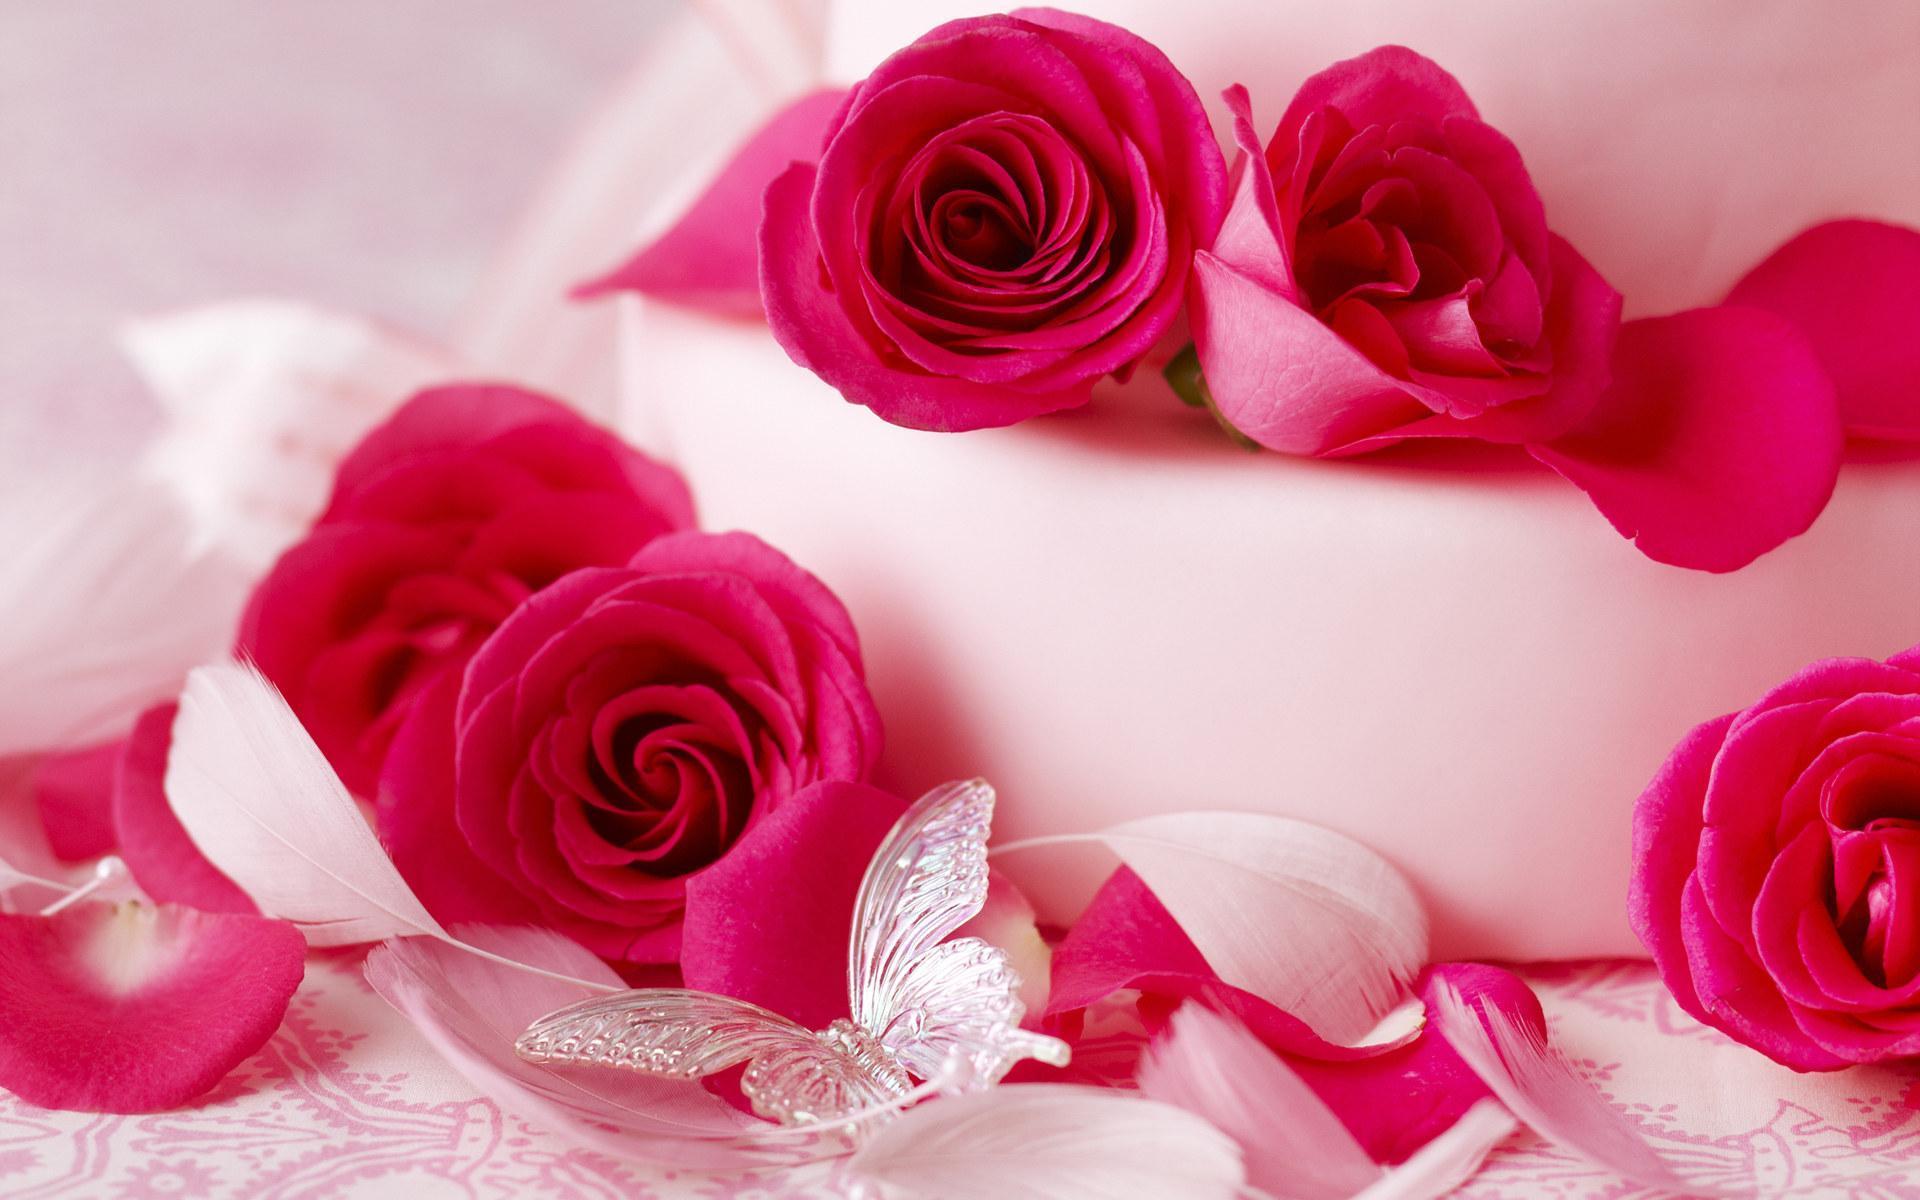 Romantic Roses Wallpaper